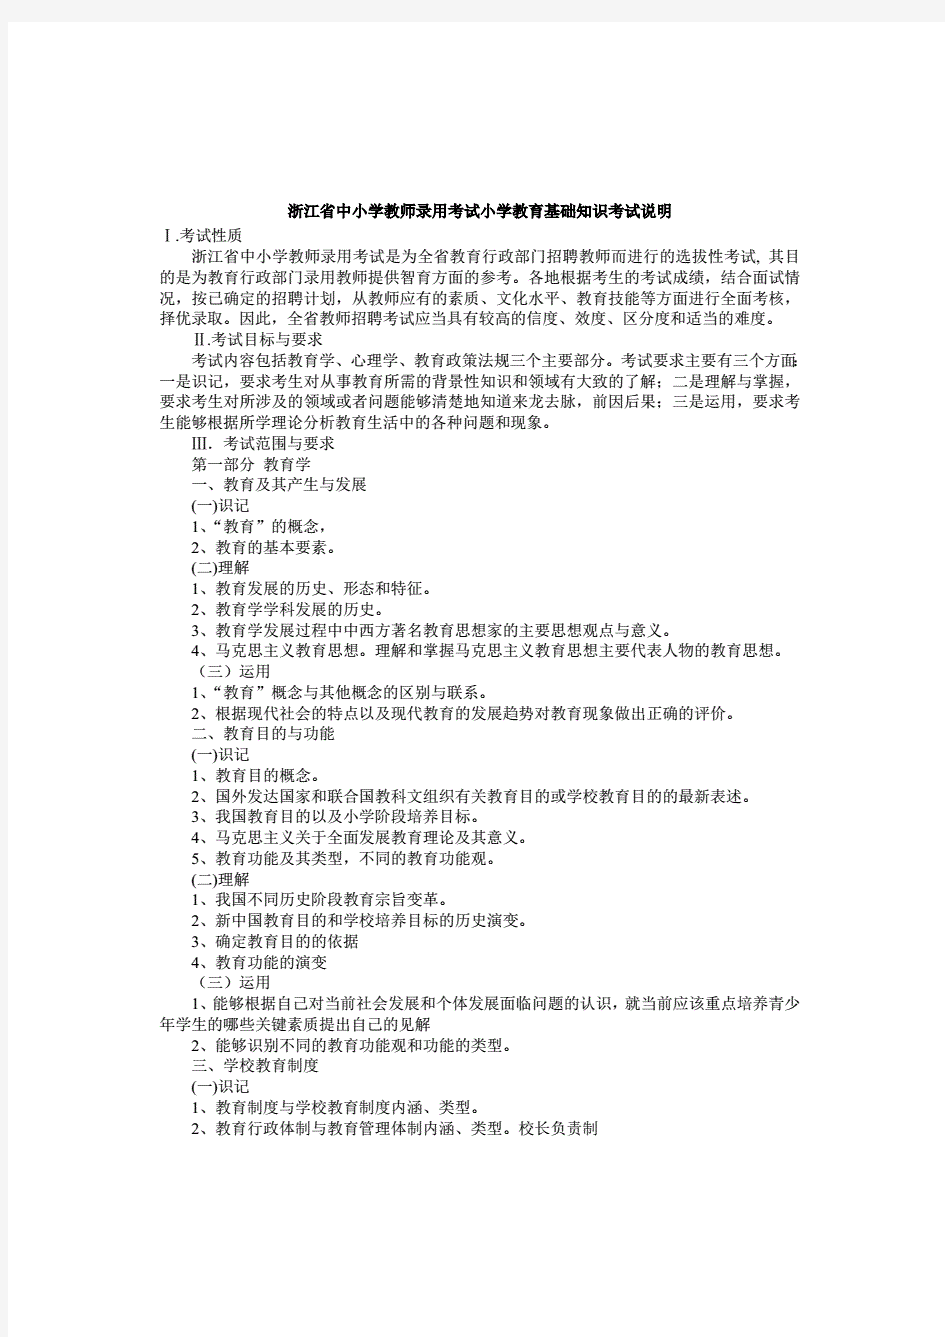 浙江省中小学教师录用考试小学教育基础知识考试说明